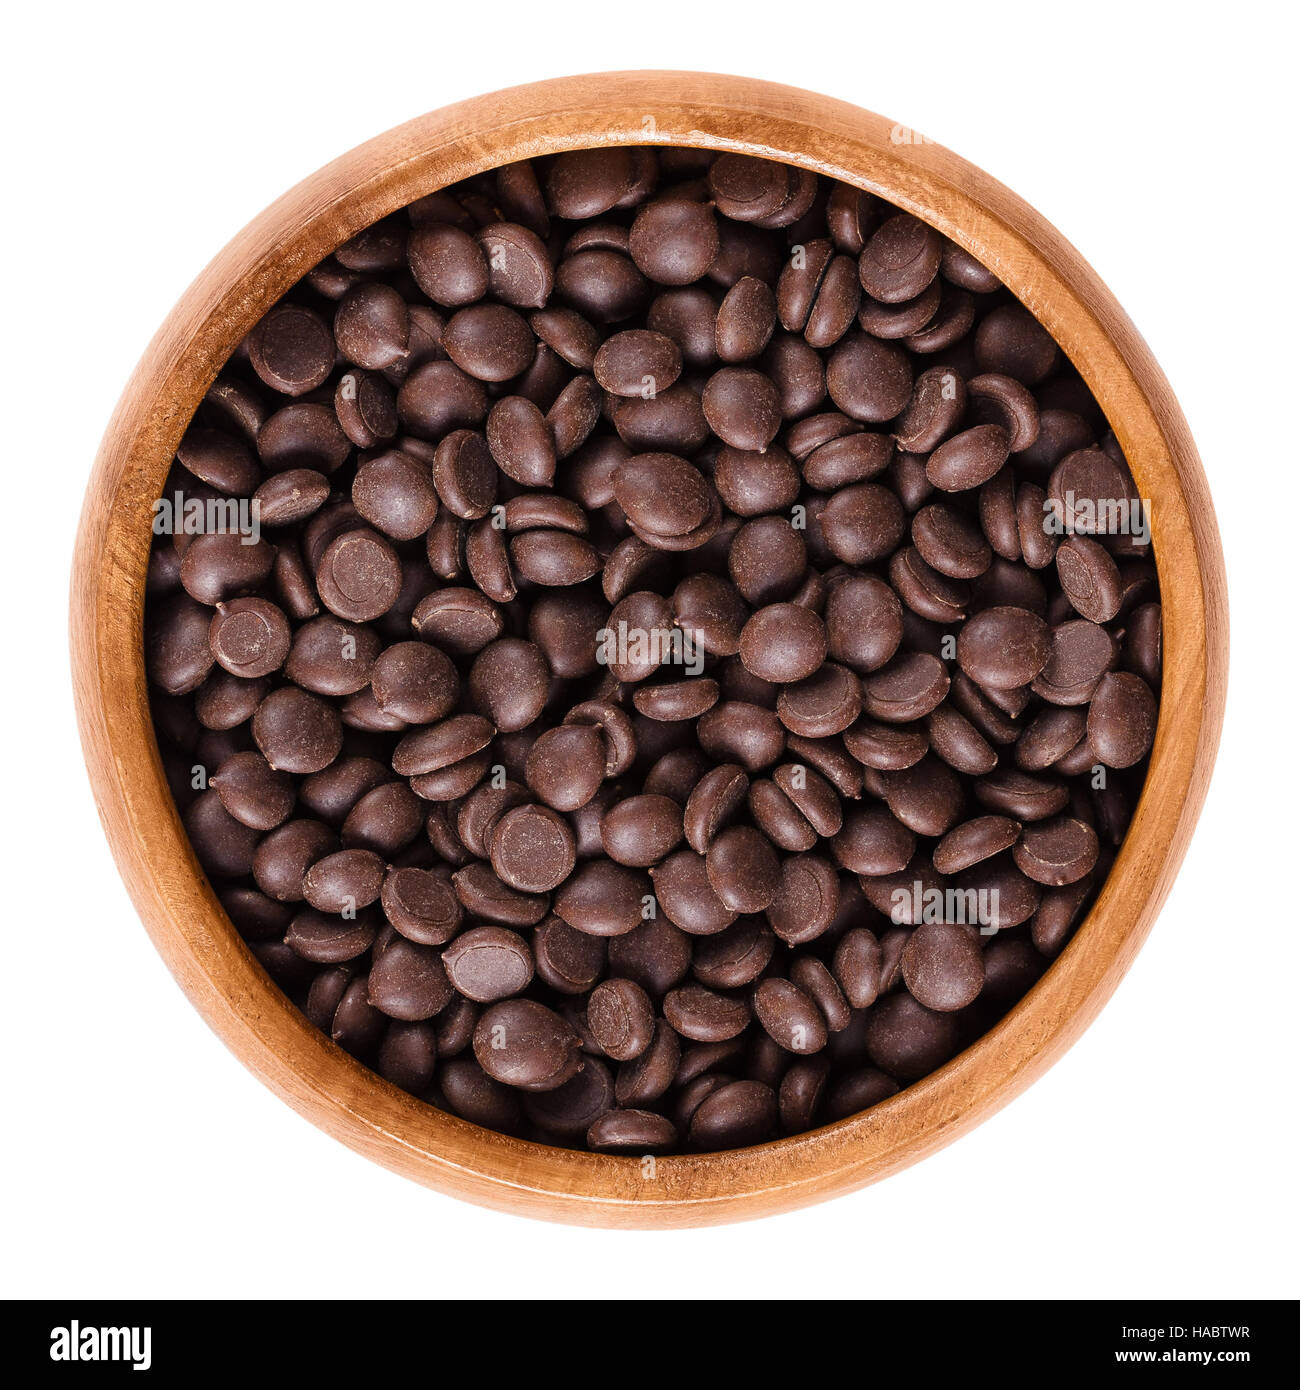 Gotas de chocolate oscuro en el tazón de madera ingrediente utilizado para galletas y magdalenas. Marrón cacao producto comestible. Fotografía macro aislados. Foto de stock